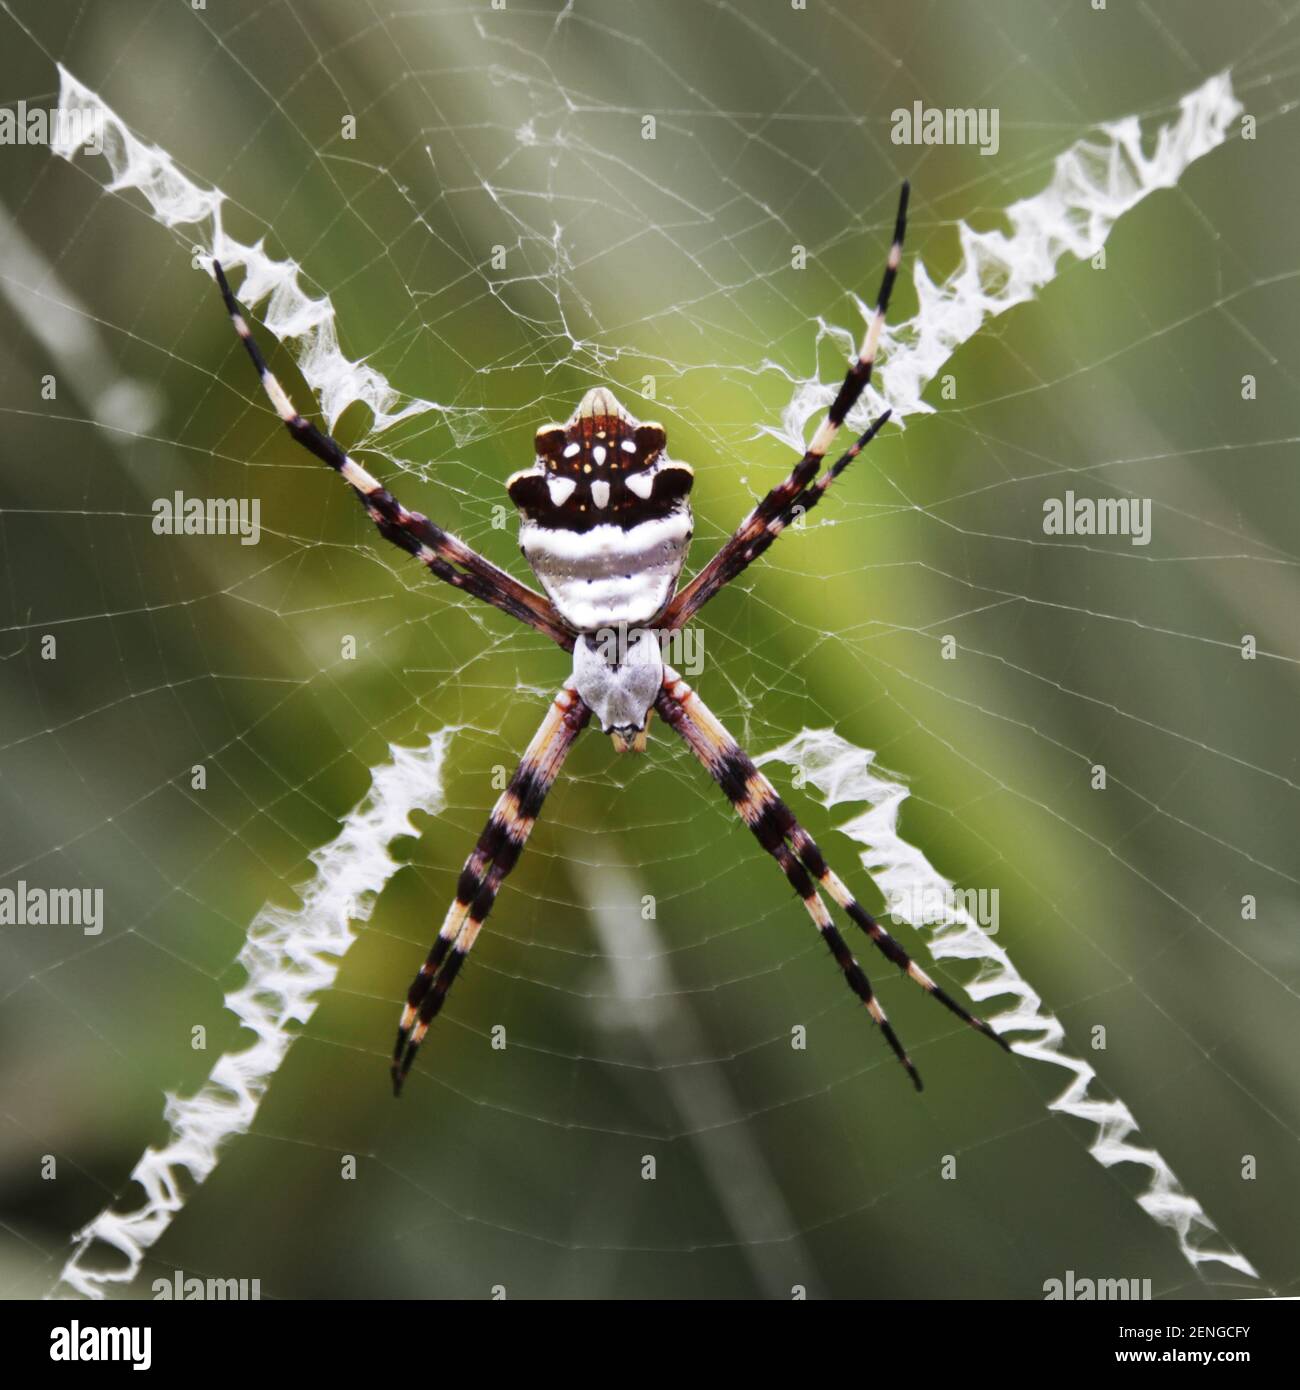 Una araña argentata argiope en una tela Foto de stock